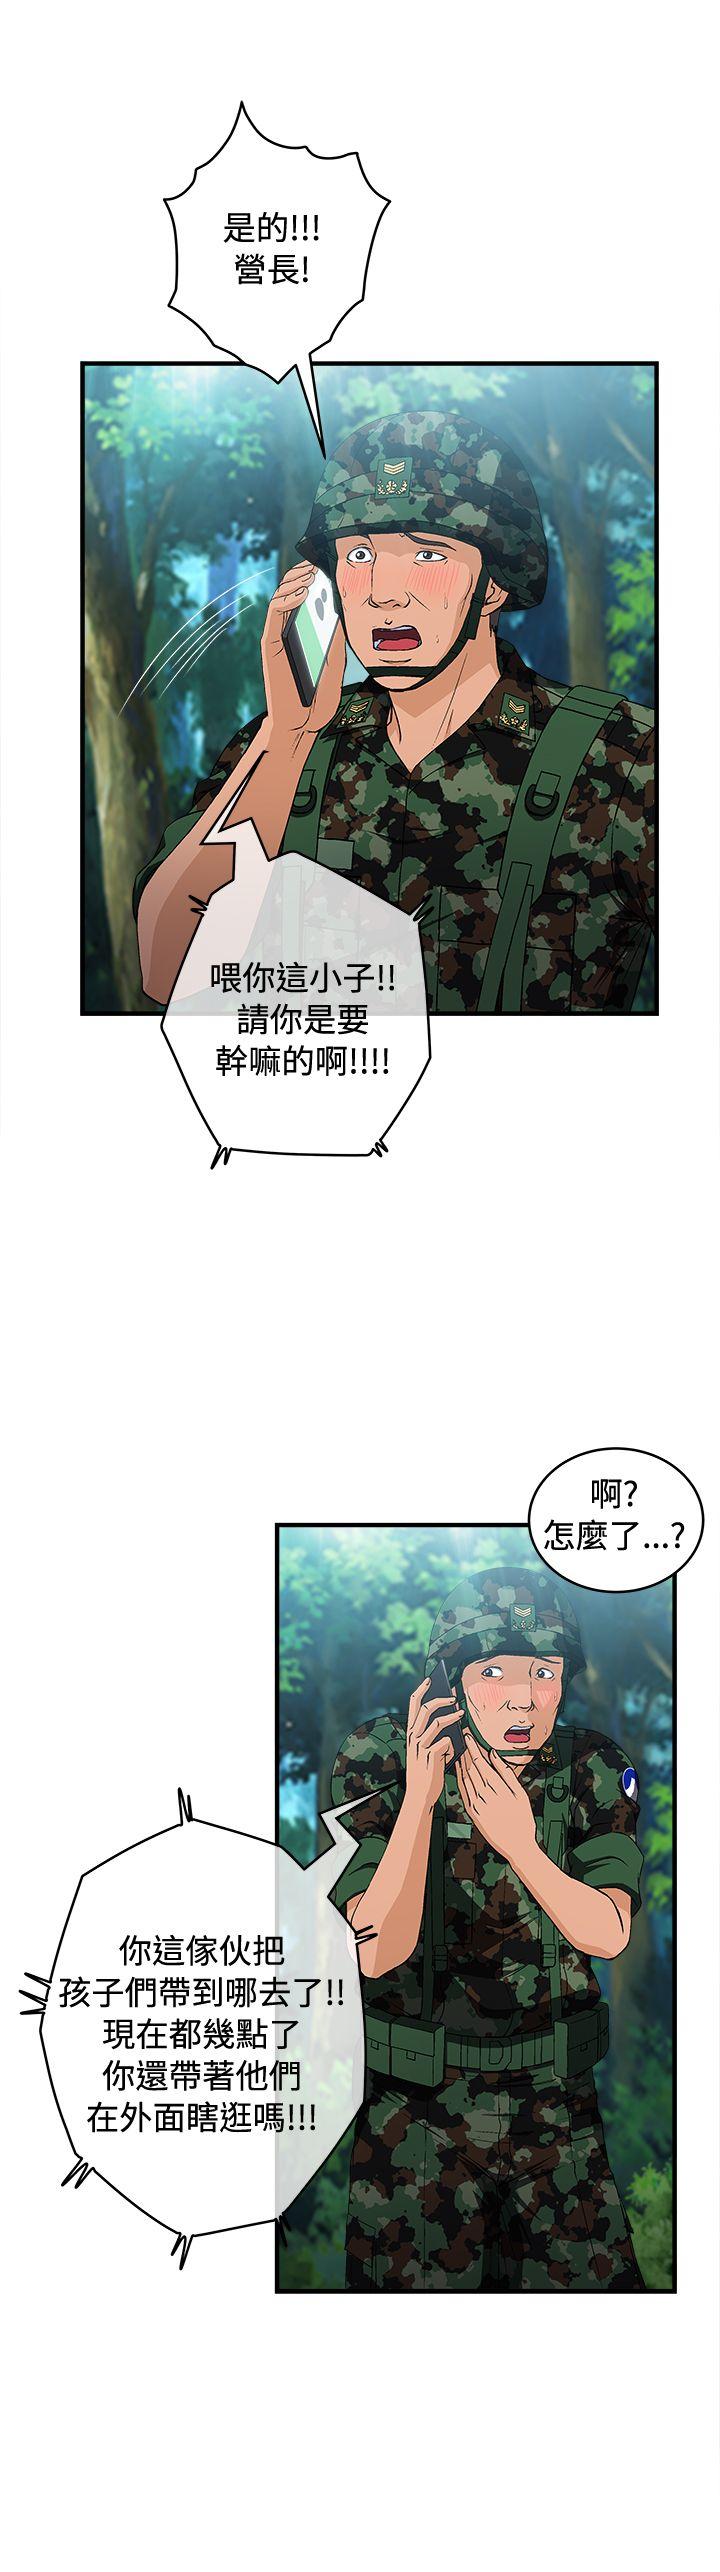 制服的诱惑  军人篇(4) 漫画图片15.jpg